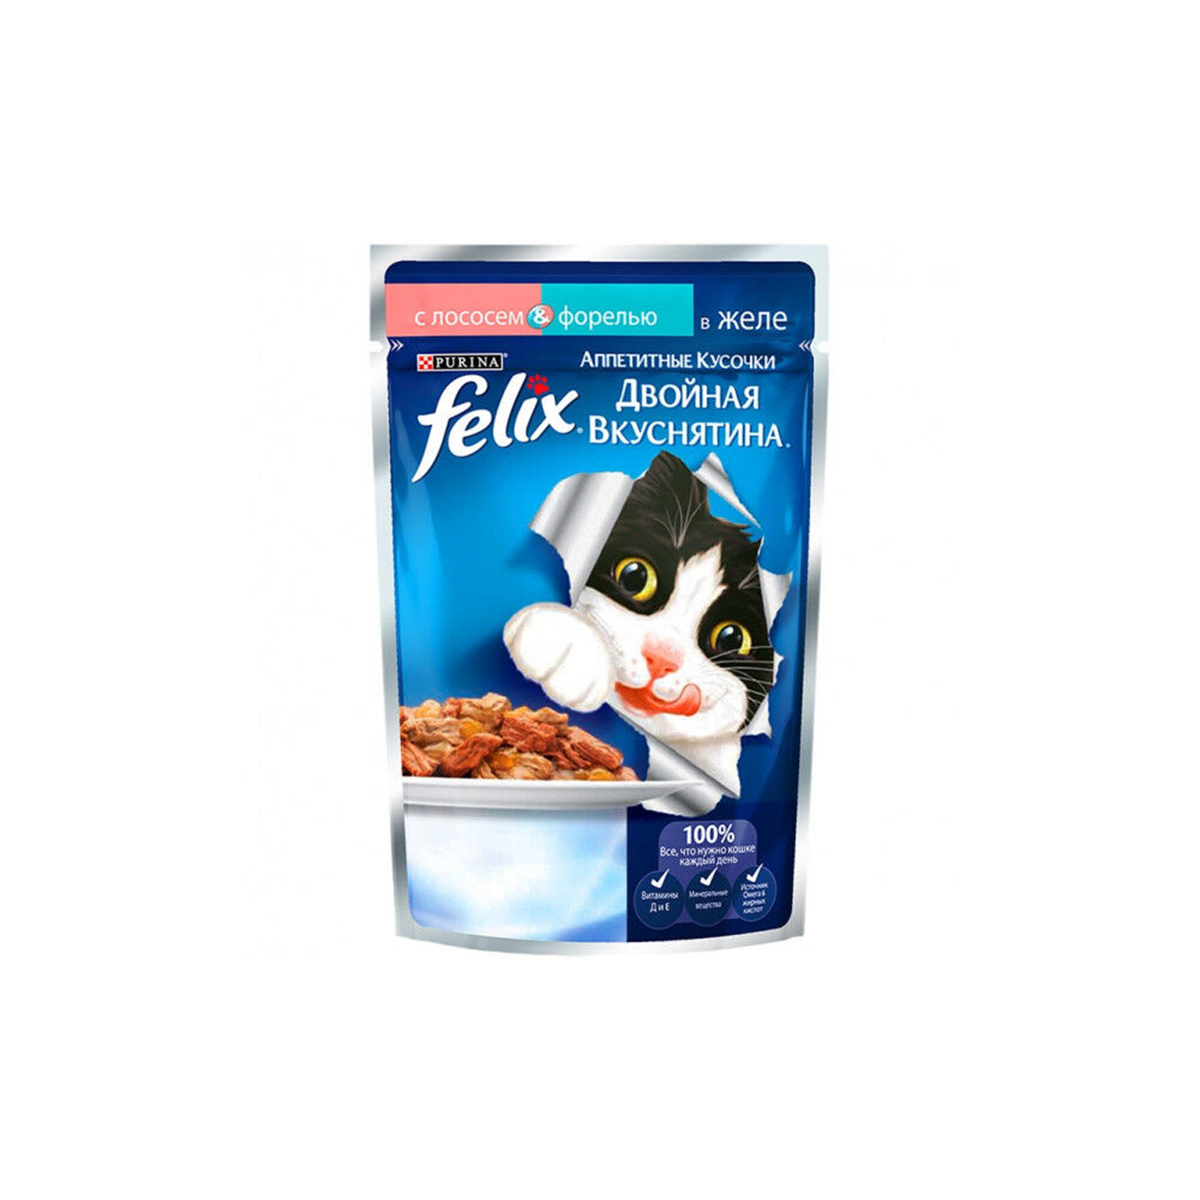 Felix влажный корм для кошек. Корм д\к пауч Felix 26*85гр аппетитные кусочки желе ягненок.